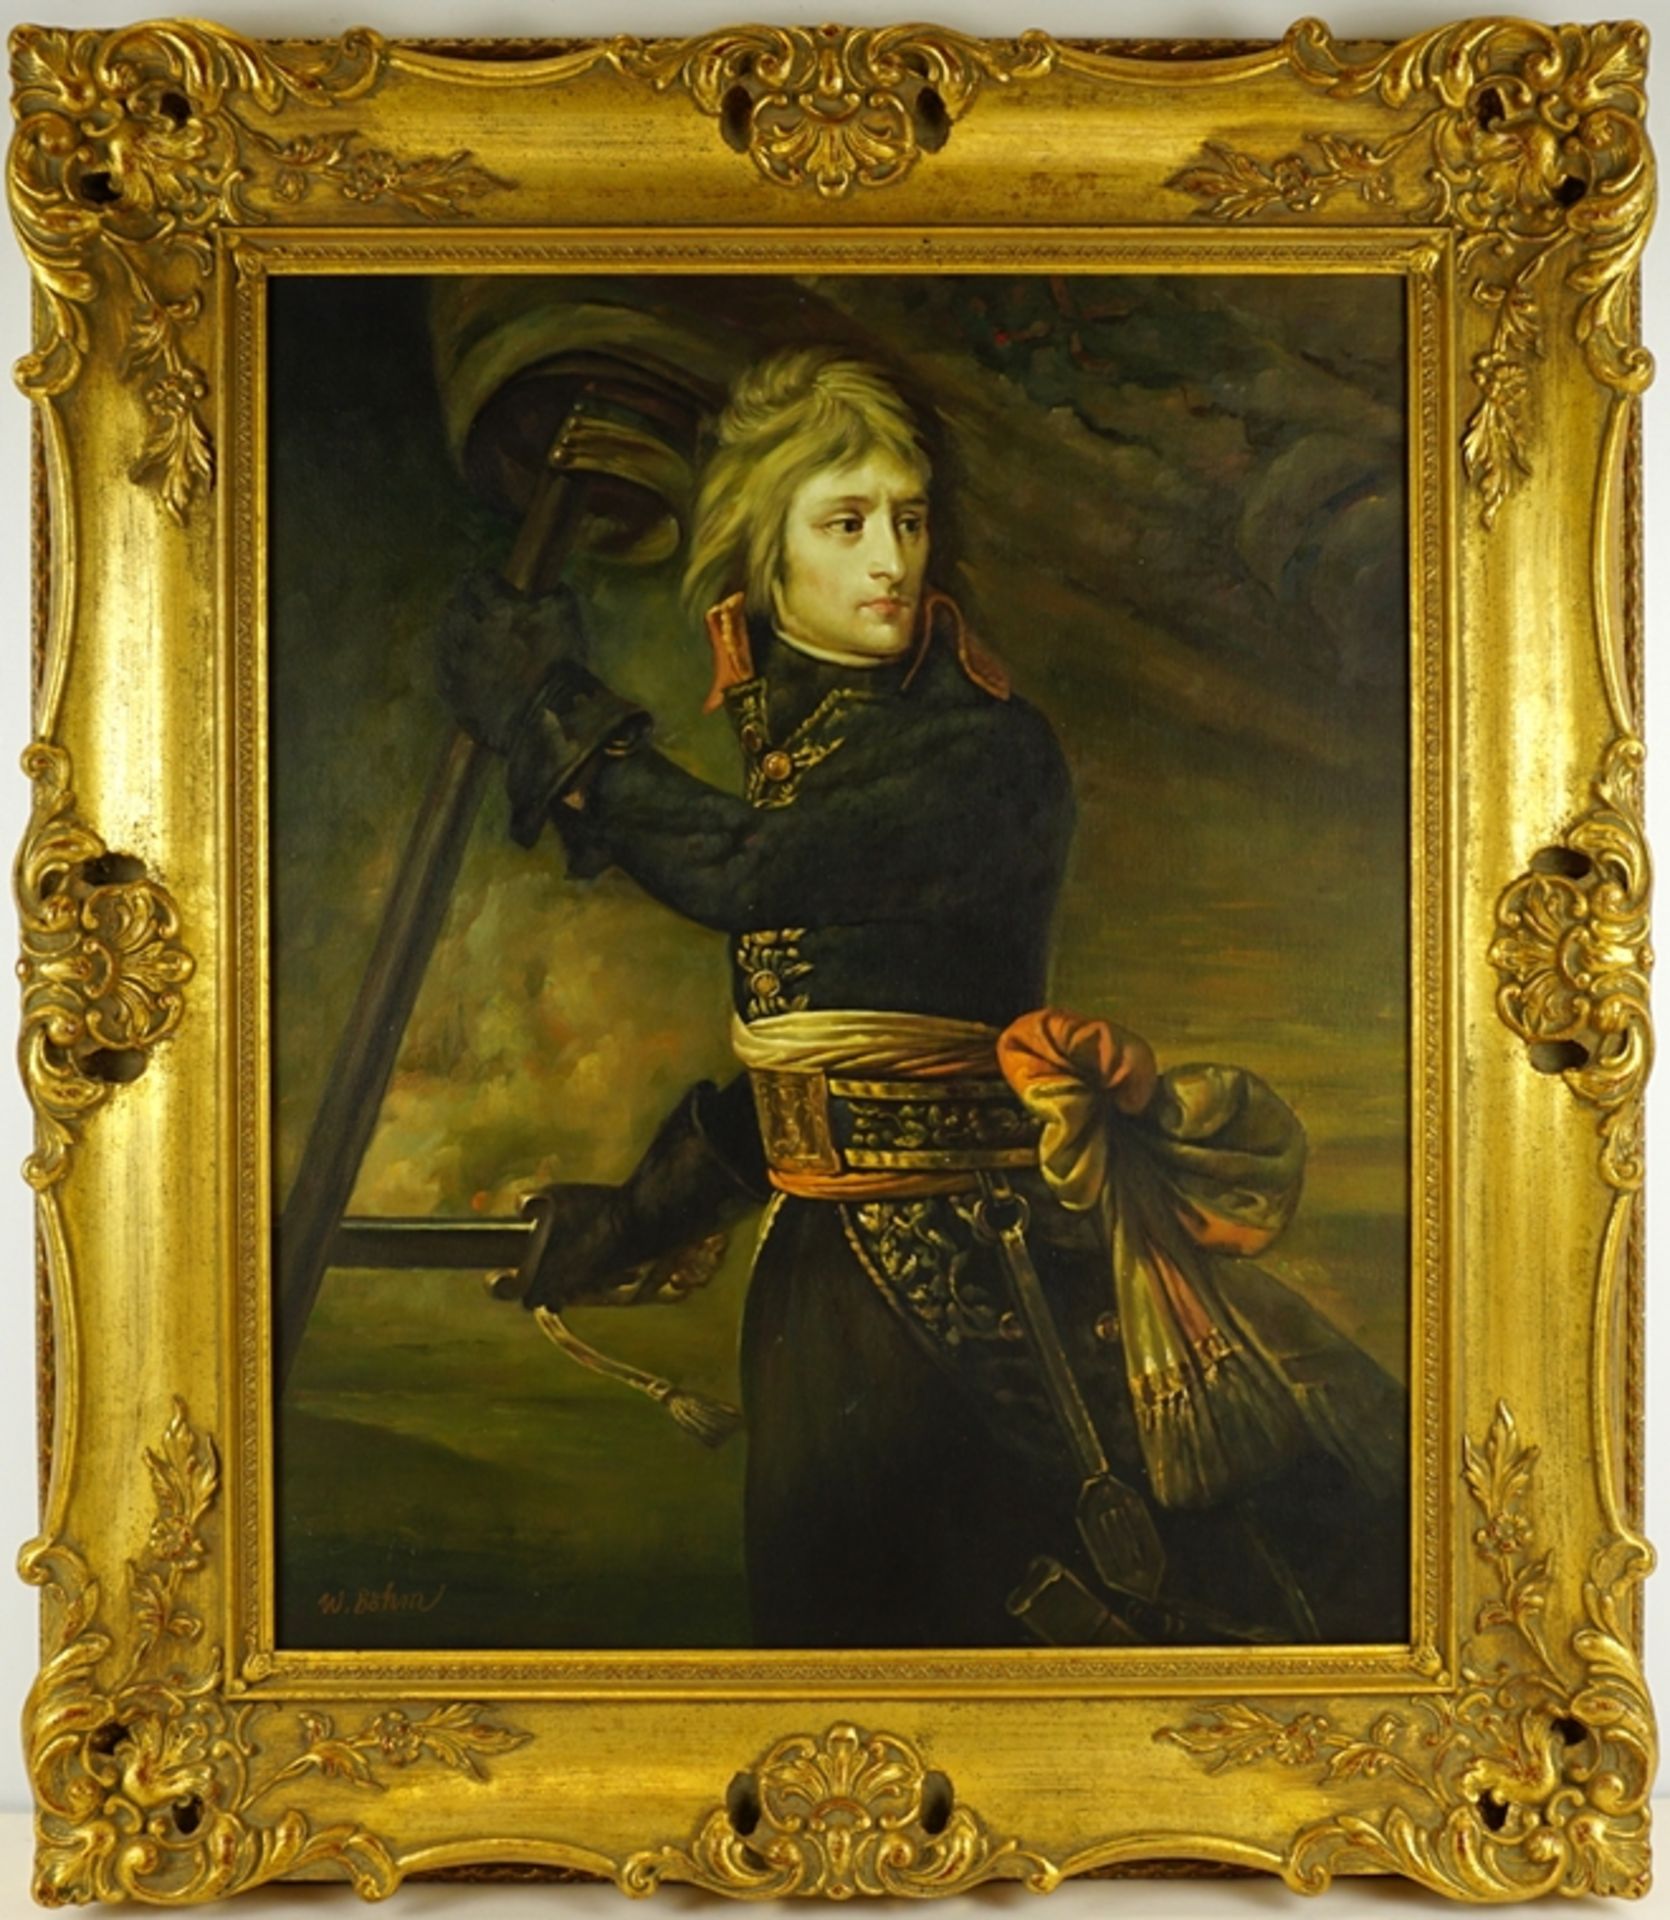 W. Böhm, "Napoleon Bonaparte auf der Brücke von Arcole" nach Jean-Antoine Gros, 2. Hälfte 20. Jh.,